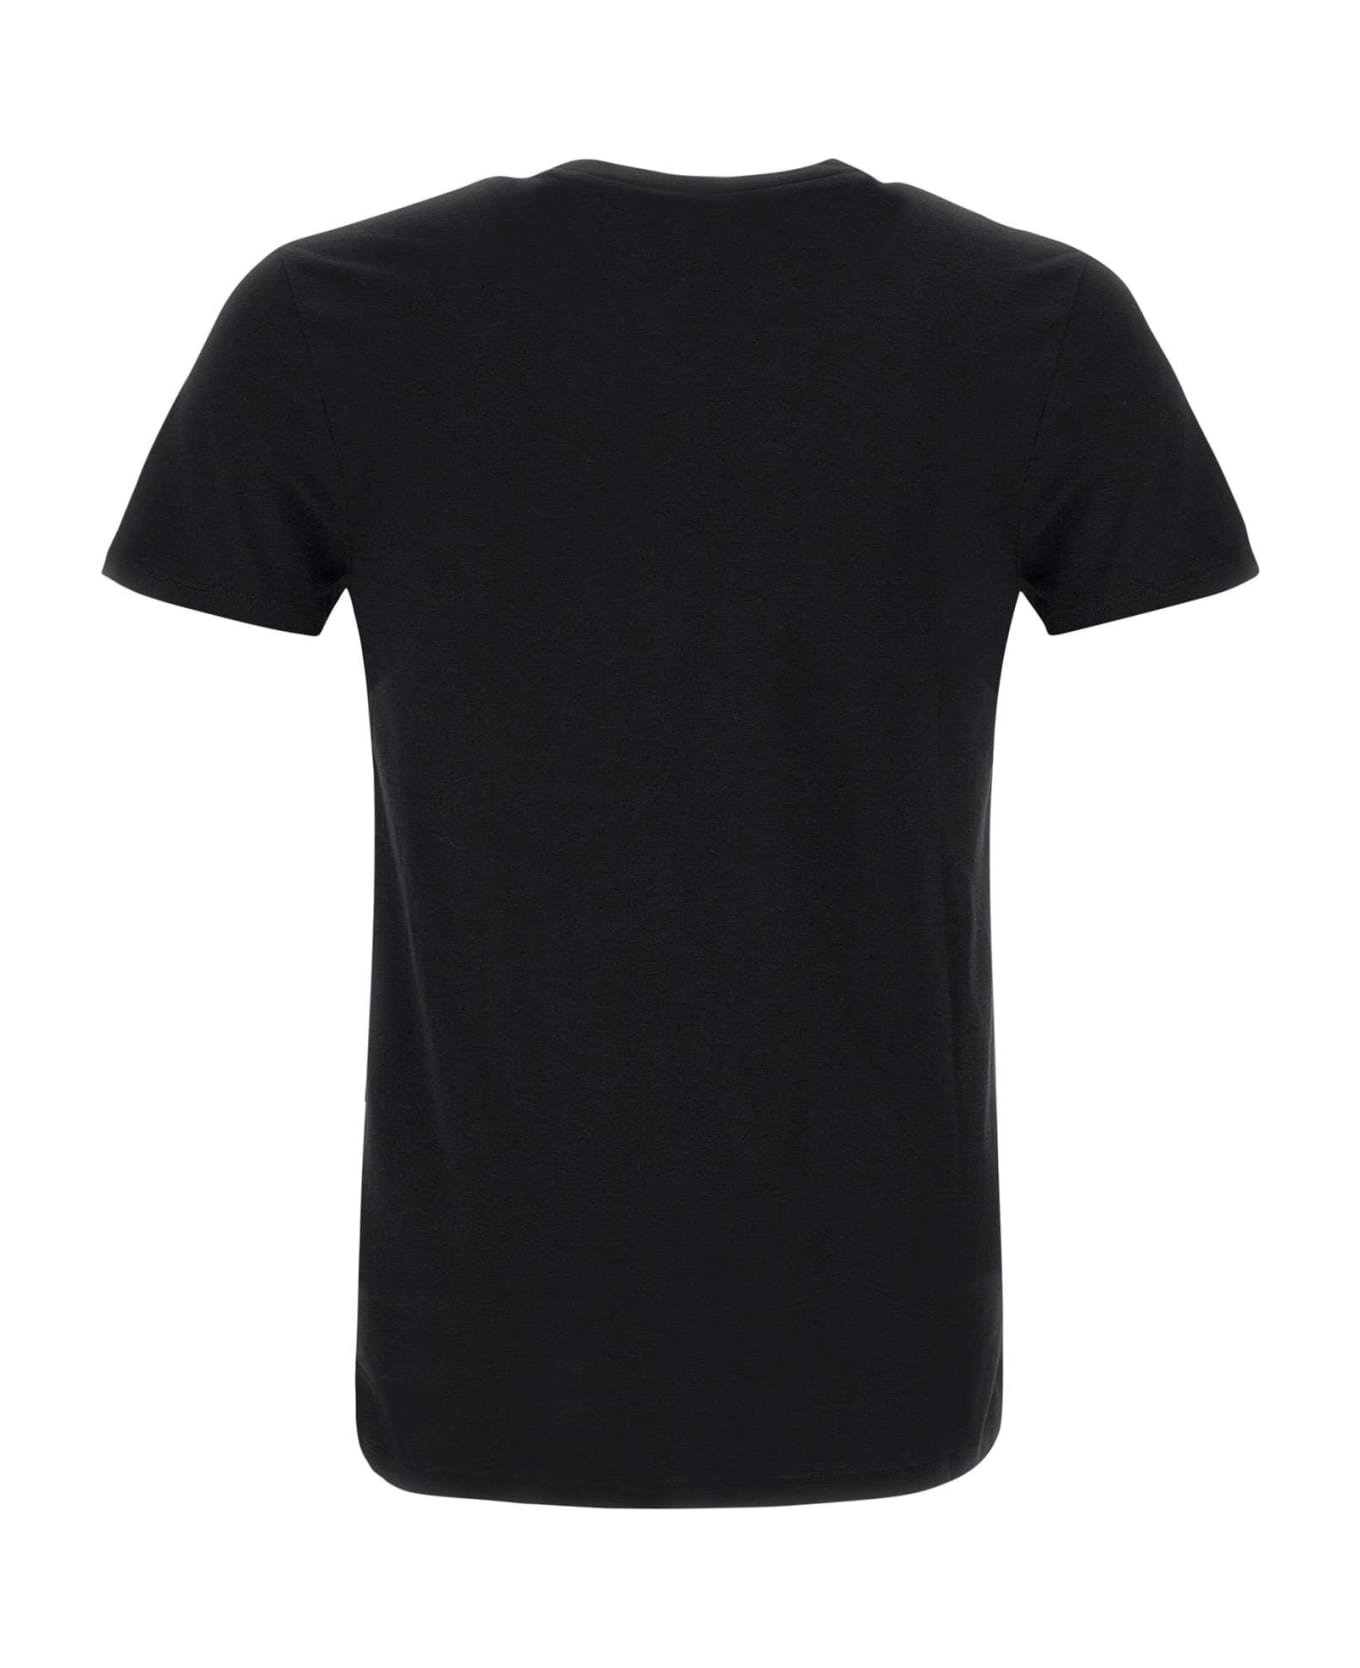 Lacoste Pima Cotton T-shirt - BLACK